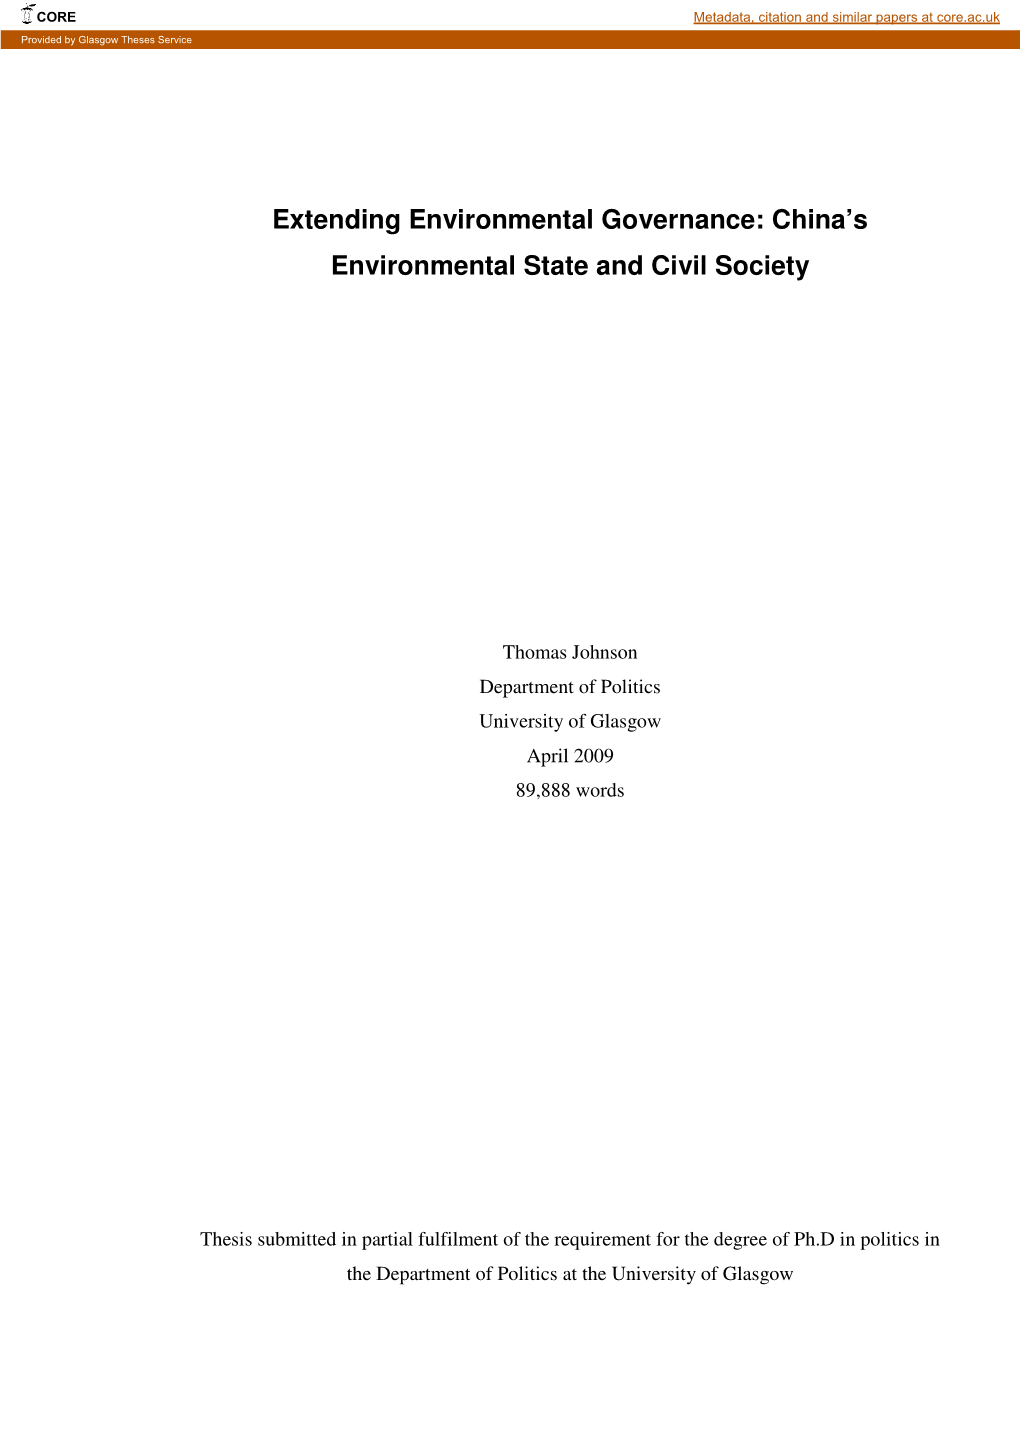 China's Environmental State and Civil Society